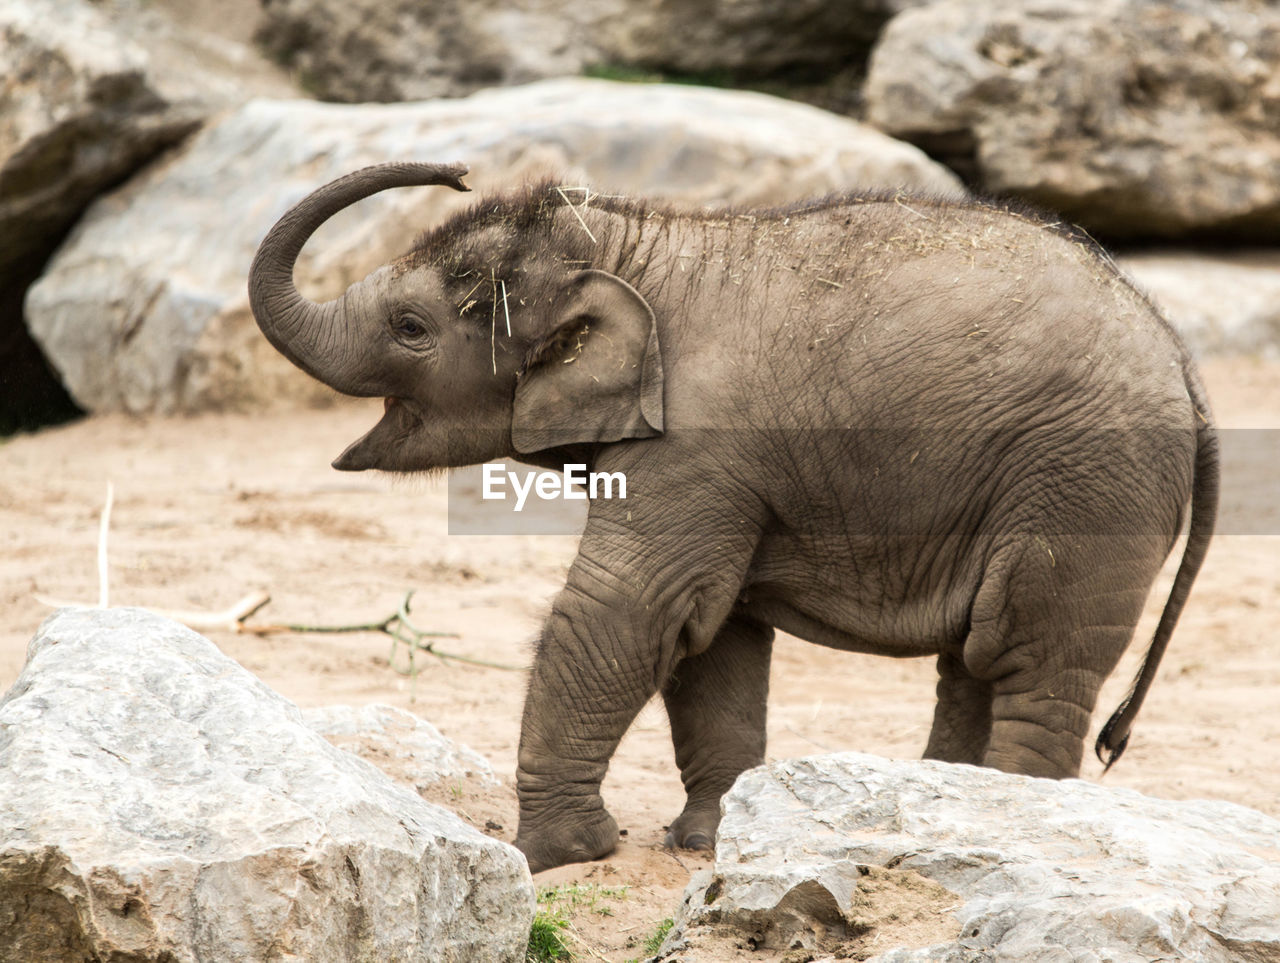 ELEPHANT IN ZOO